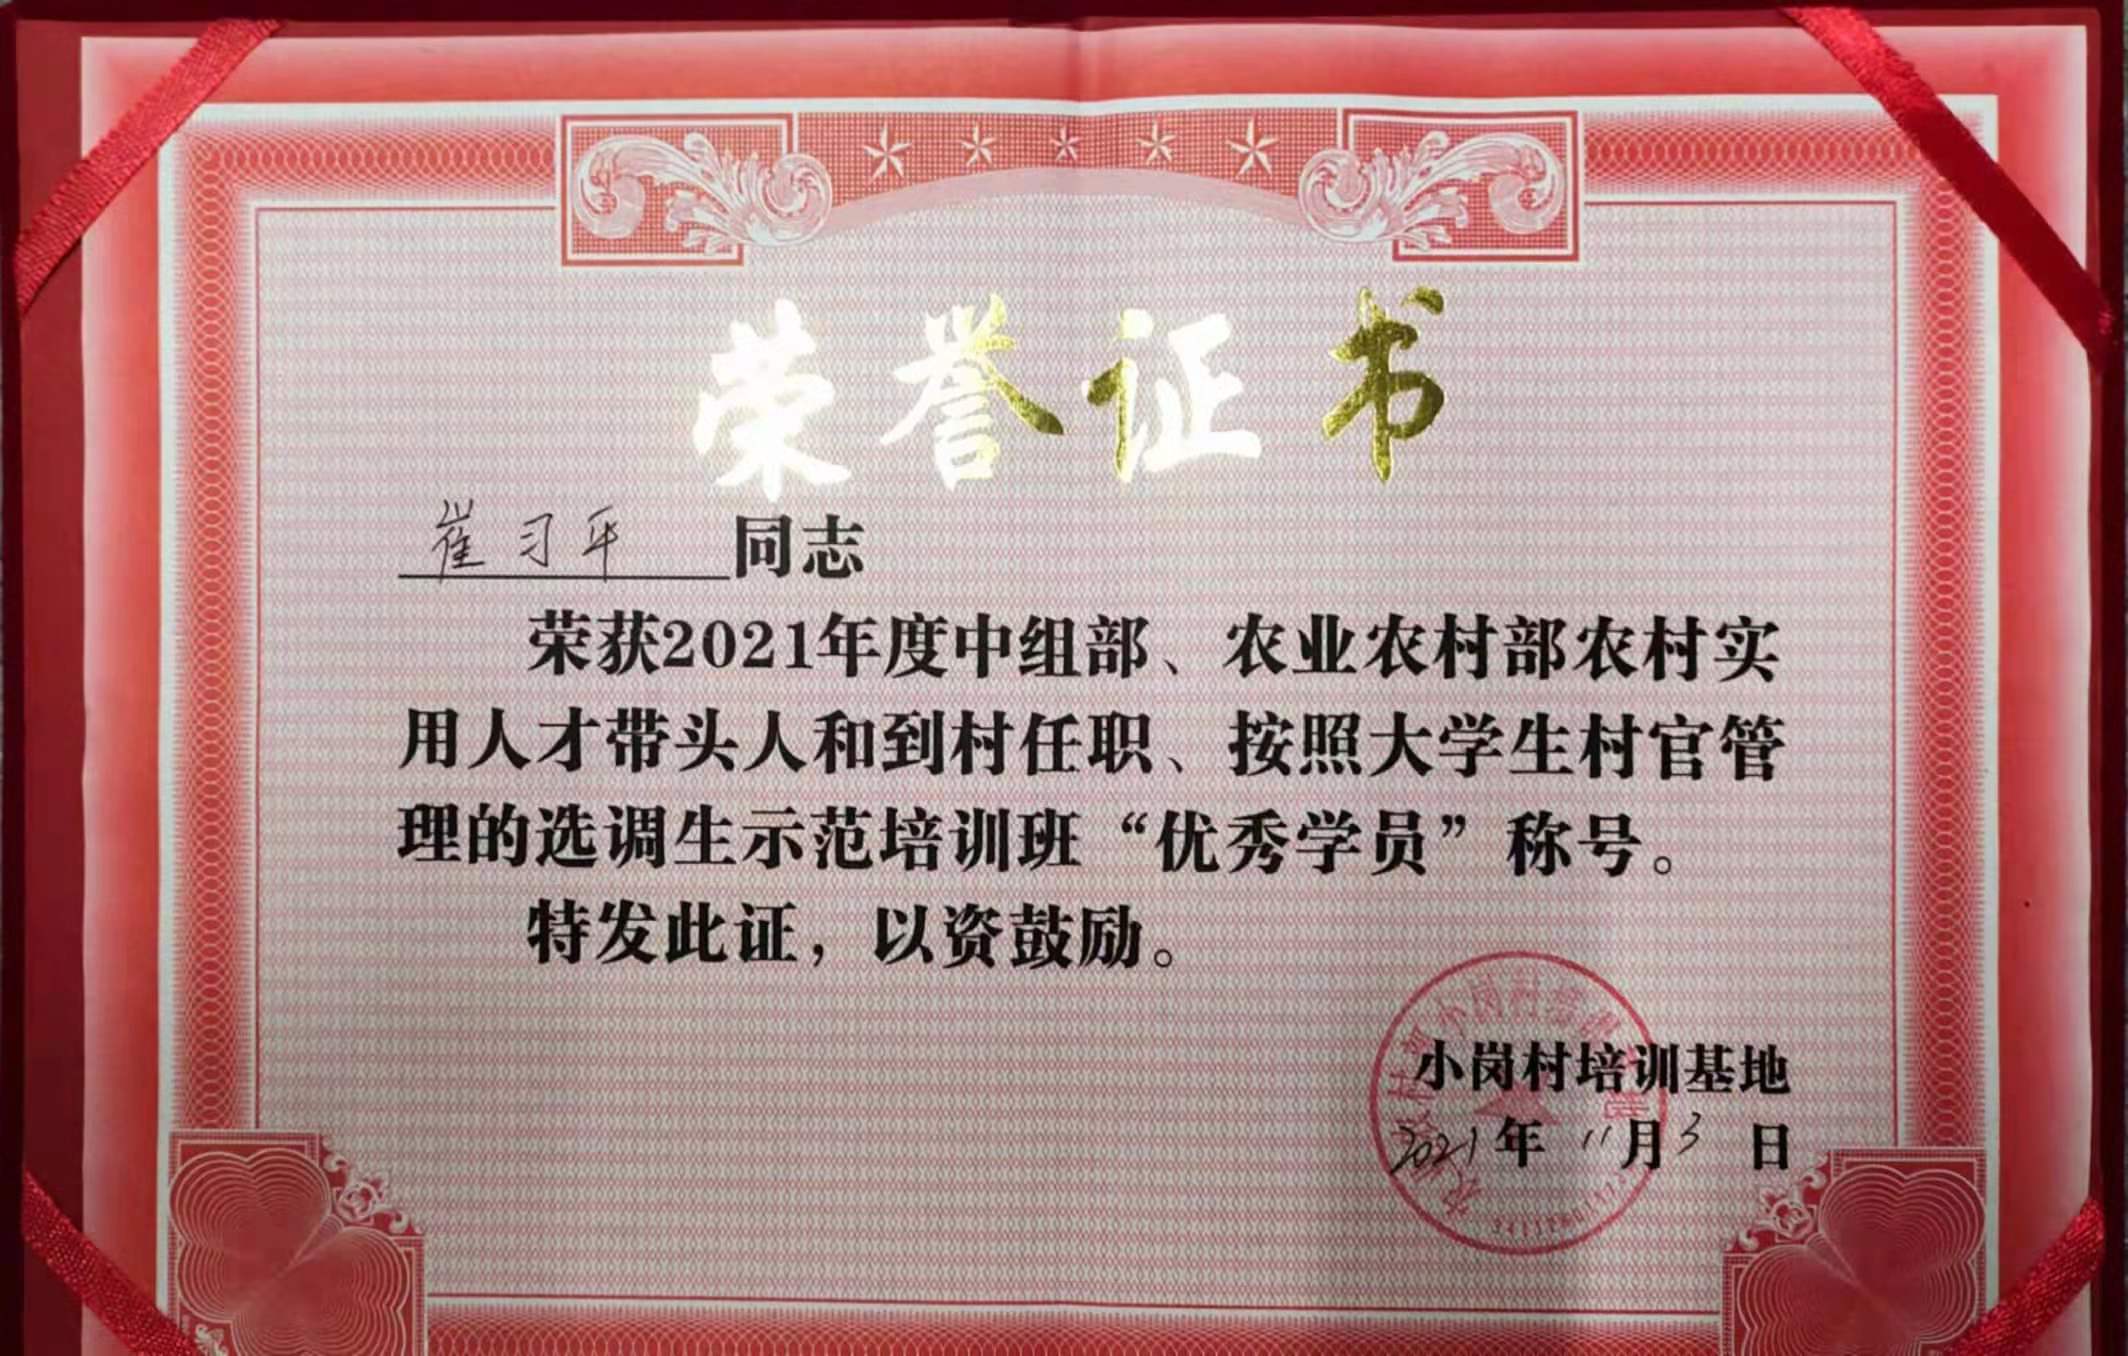 崔習平獲得2021年小崗村培訓基地(dì)“優秀學(xué)員”稱号